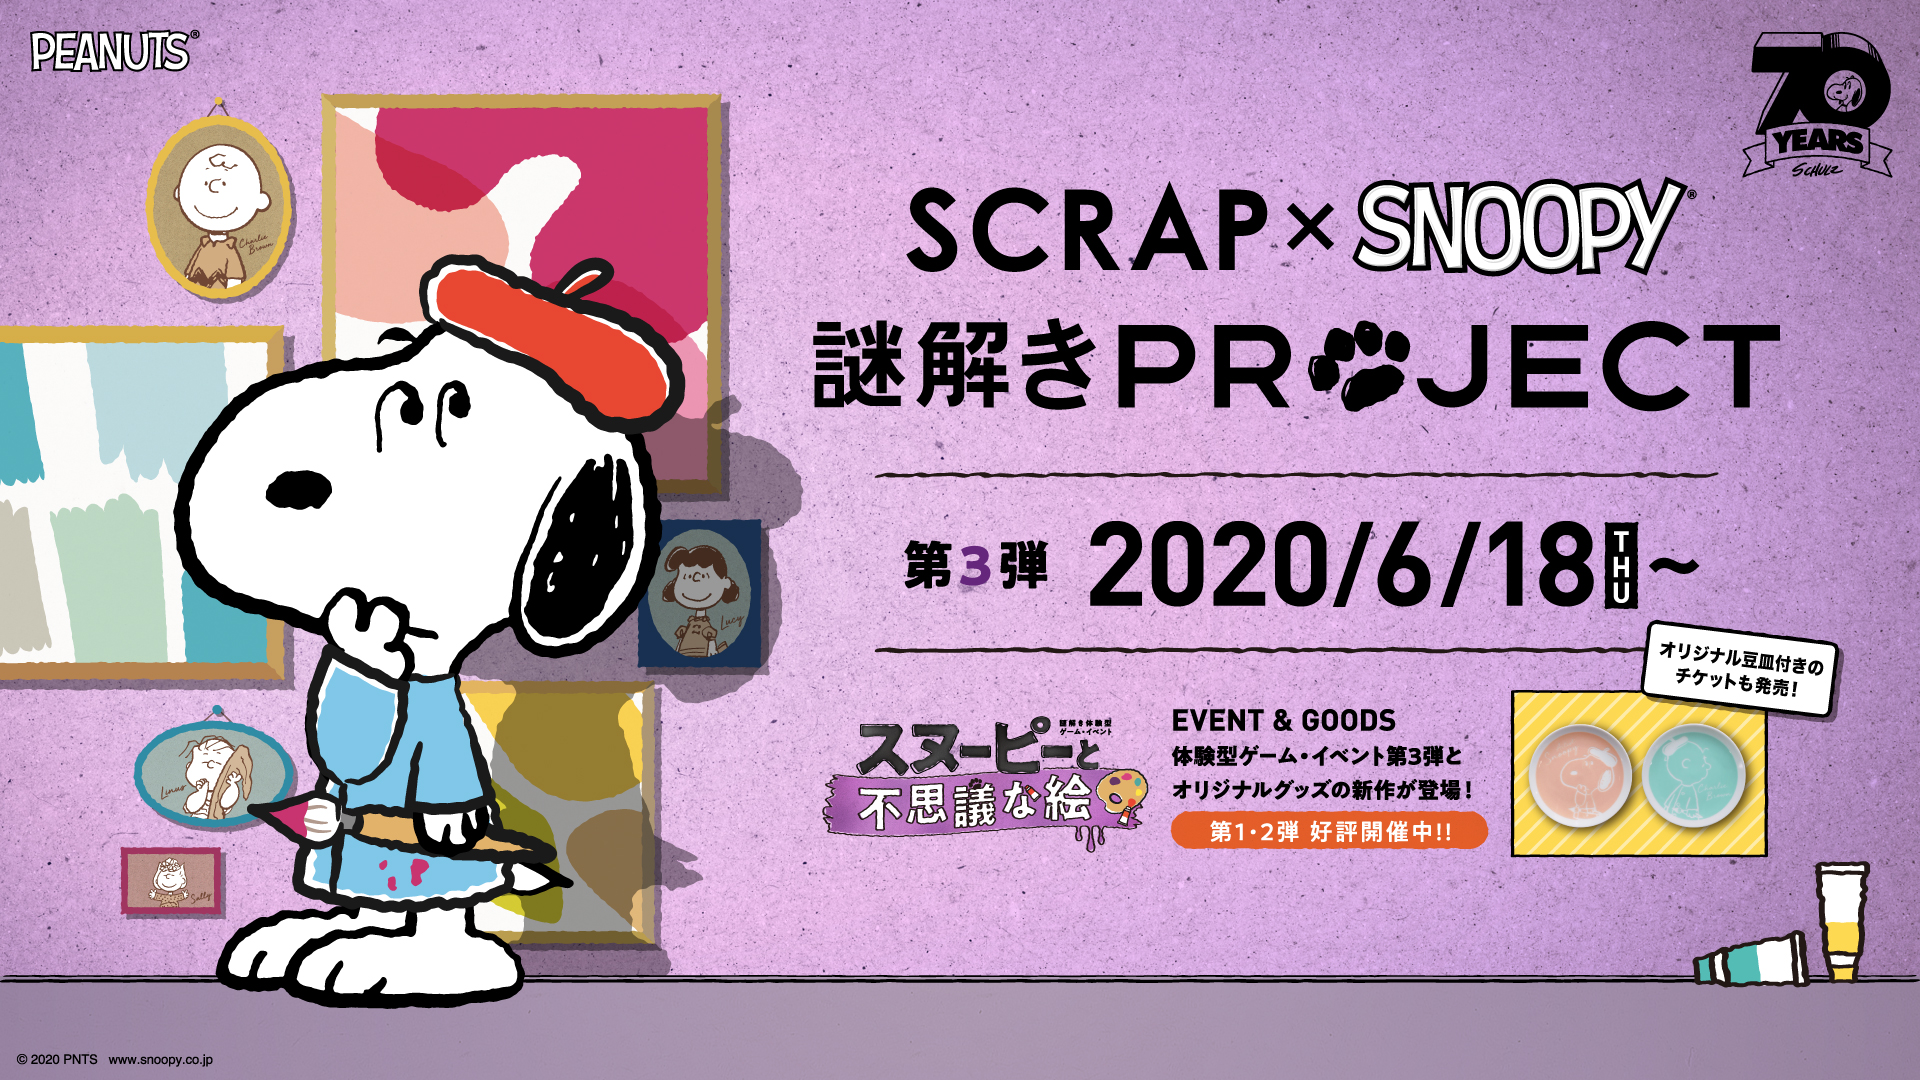 Scrap Snoopy 謎解きproject 第3弾オリジナルグッズ8種を初公開 第1弾 第2弾オリジナルグッズがオンラインショップで販売スタート お知らせ リアル脱出ゲーム 体験型謎解きエンターテインメント